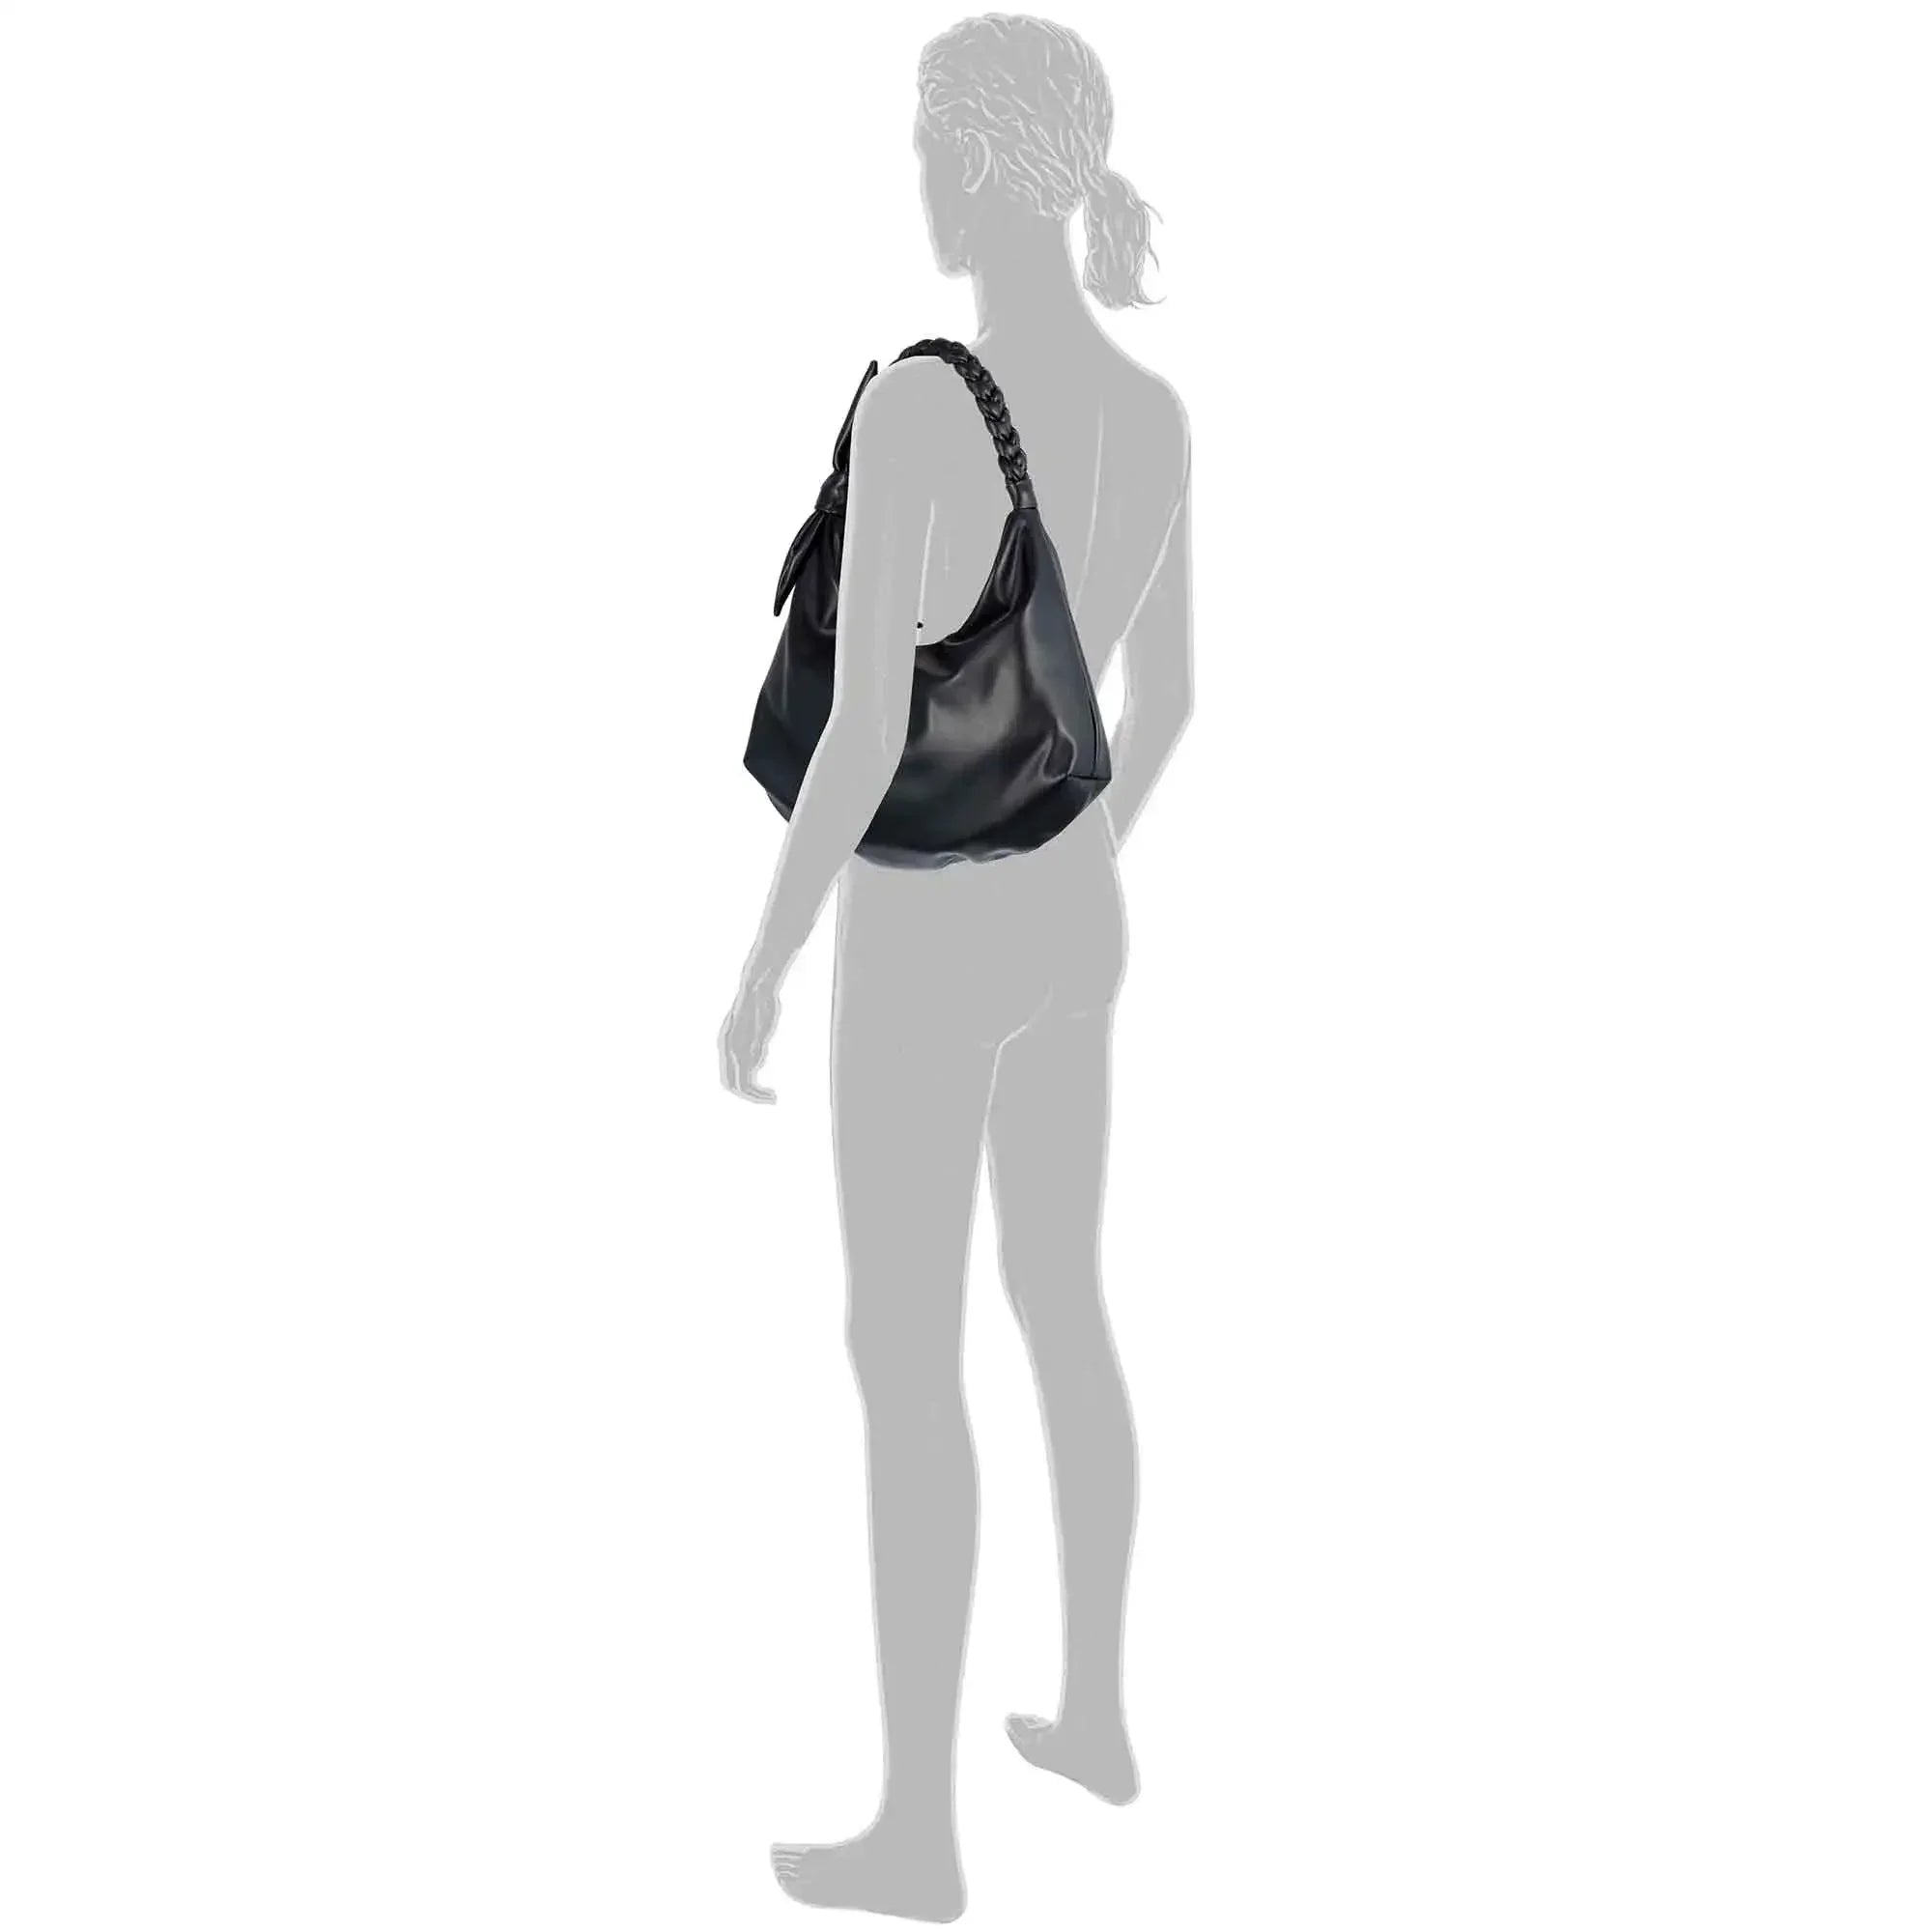 Tom Tailor Denim Rica shoulder bag 35 cm - off white